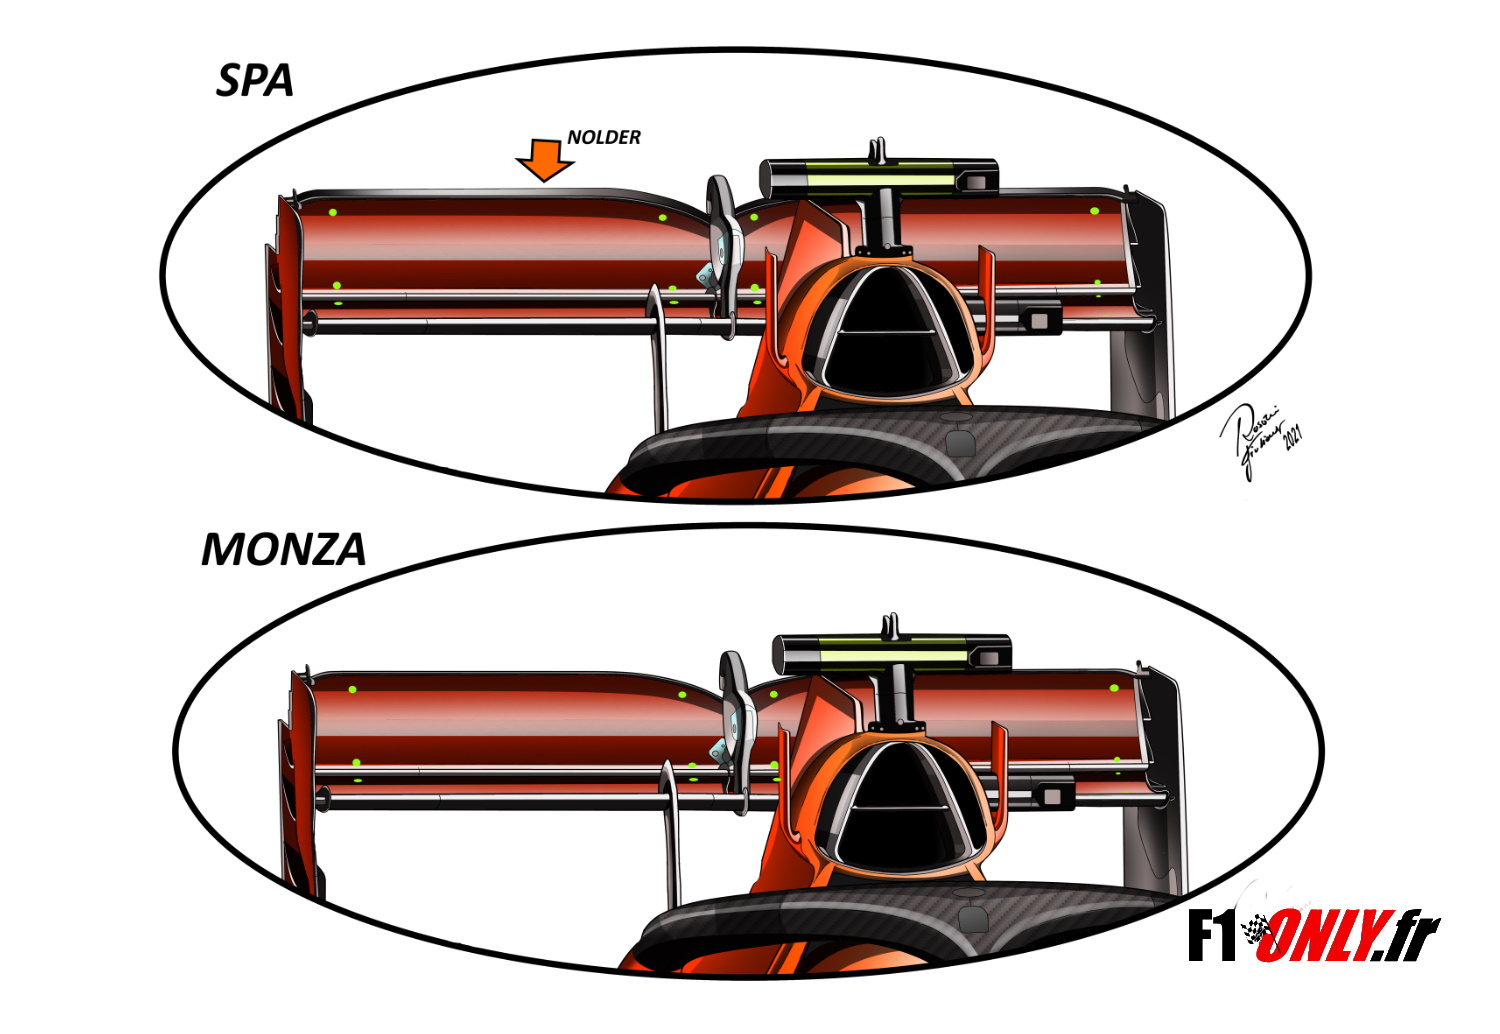 F1 - Tecnica F1: come la McLaren ha ripreso il sopravvento sulla Ferrari a Monza